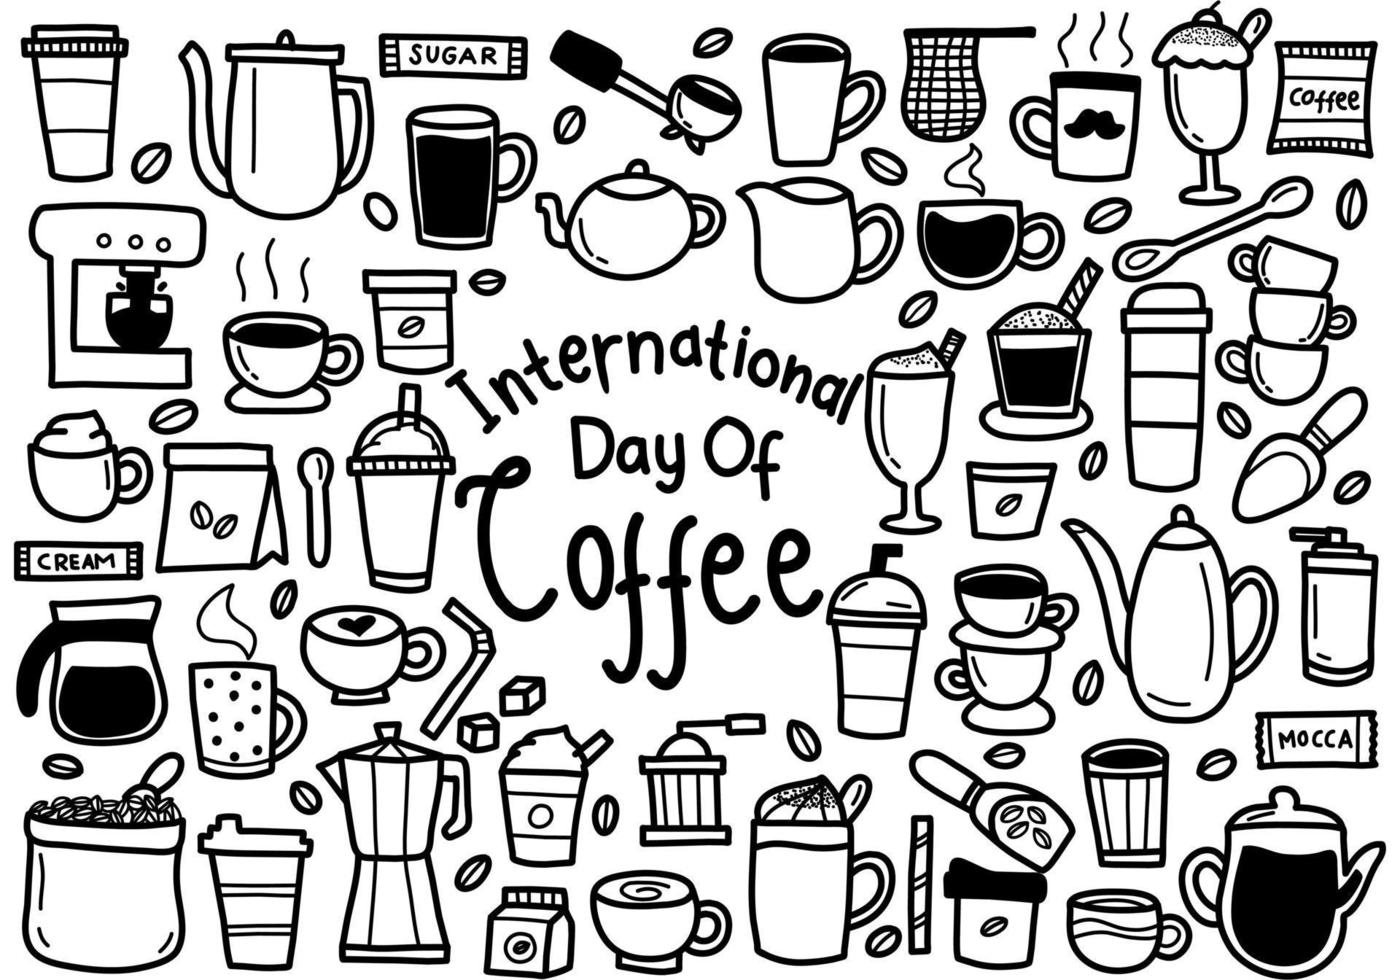 internationale dag van koffie doodles vector